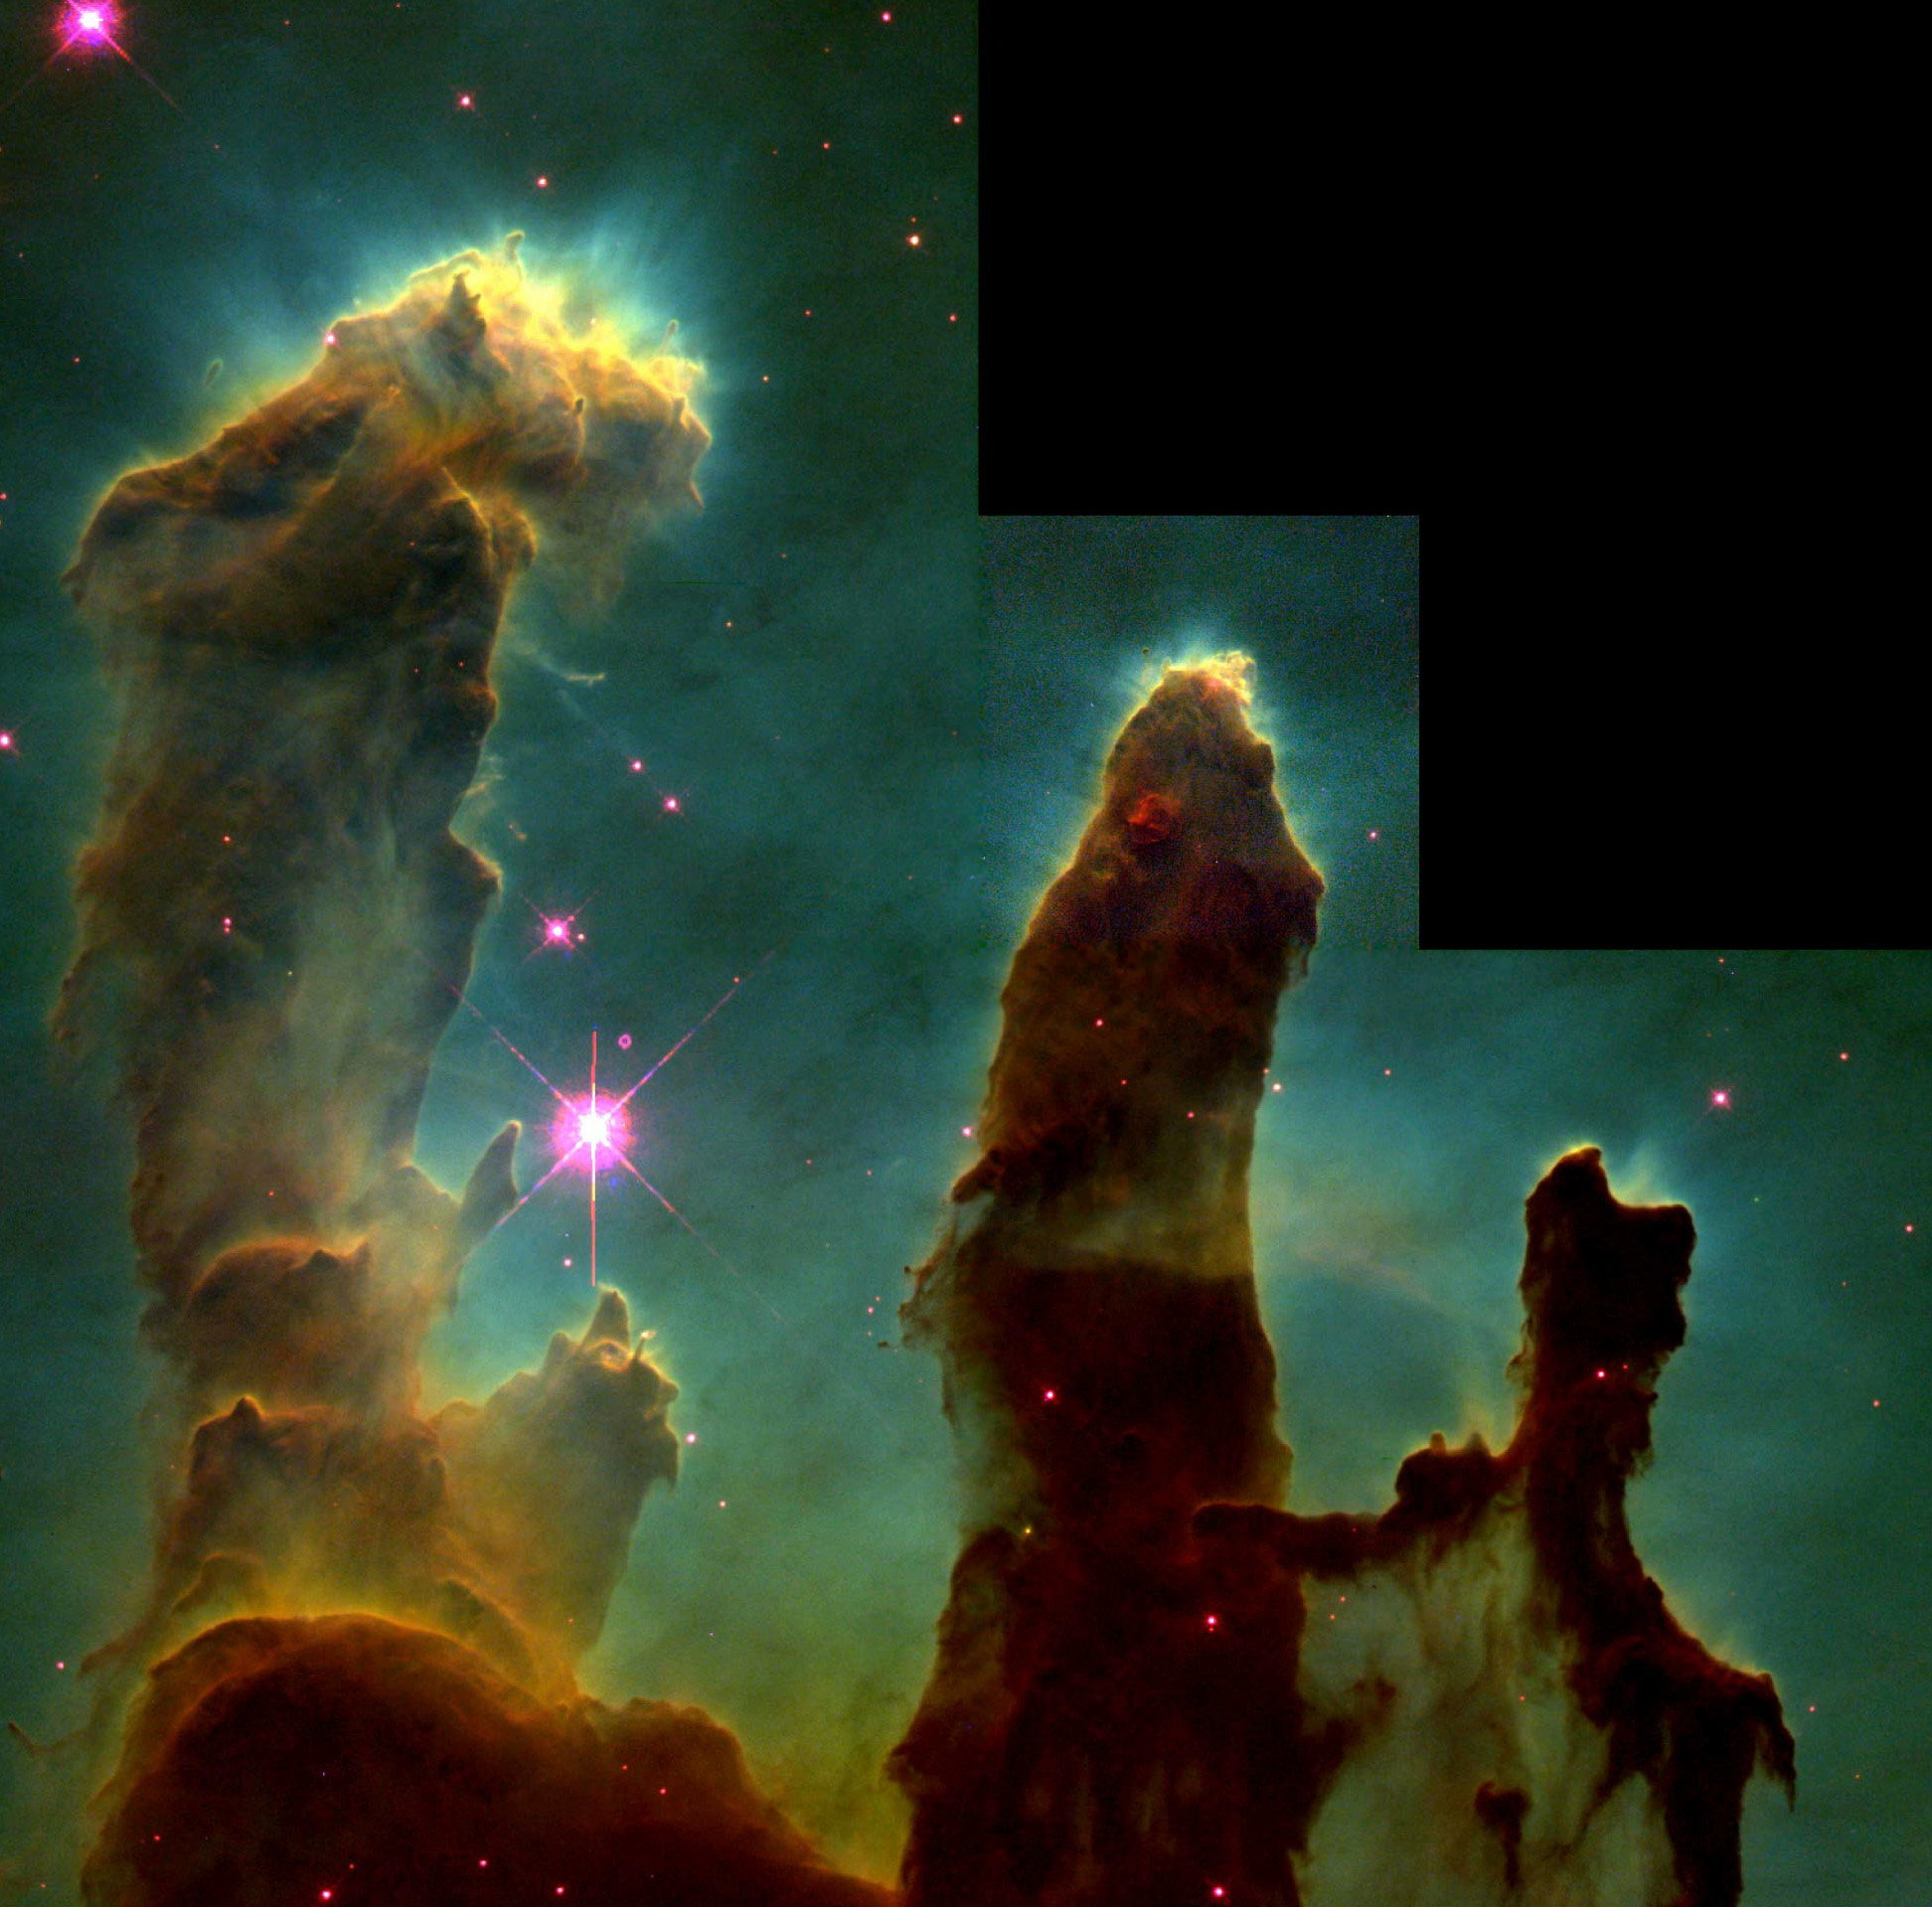 http://upload.wikimedia.org/wikipedia/commons/b/b2/Eagle_nebula_pillars.jpg